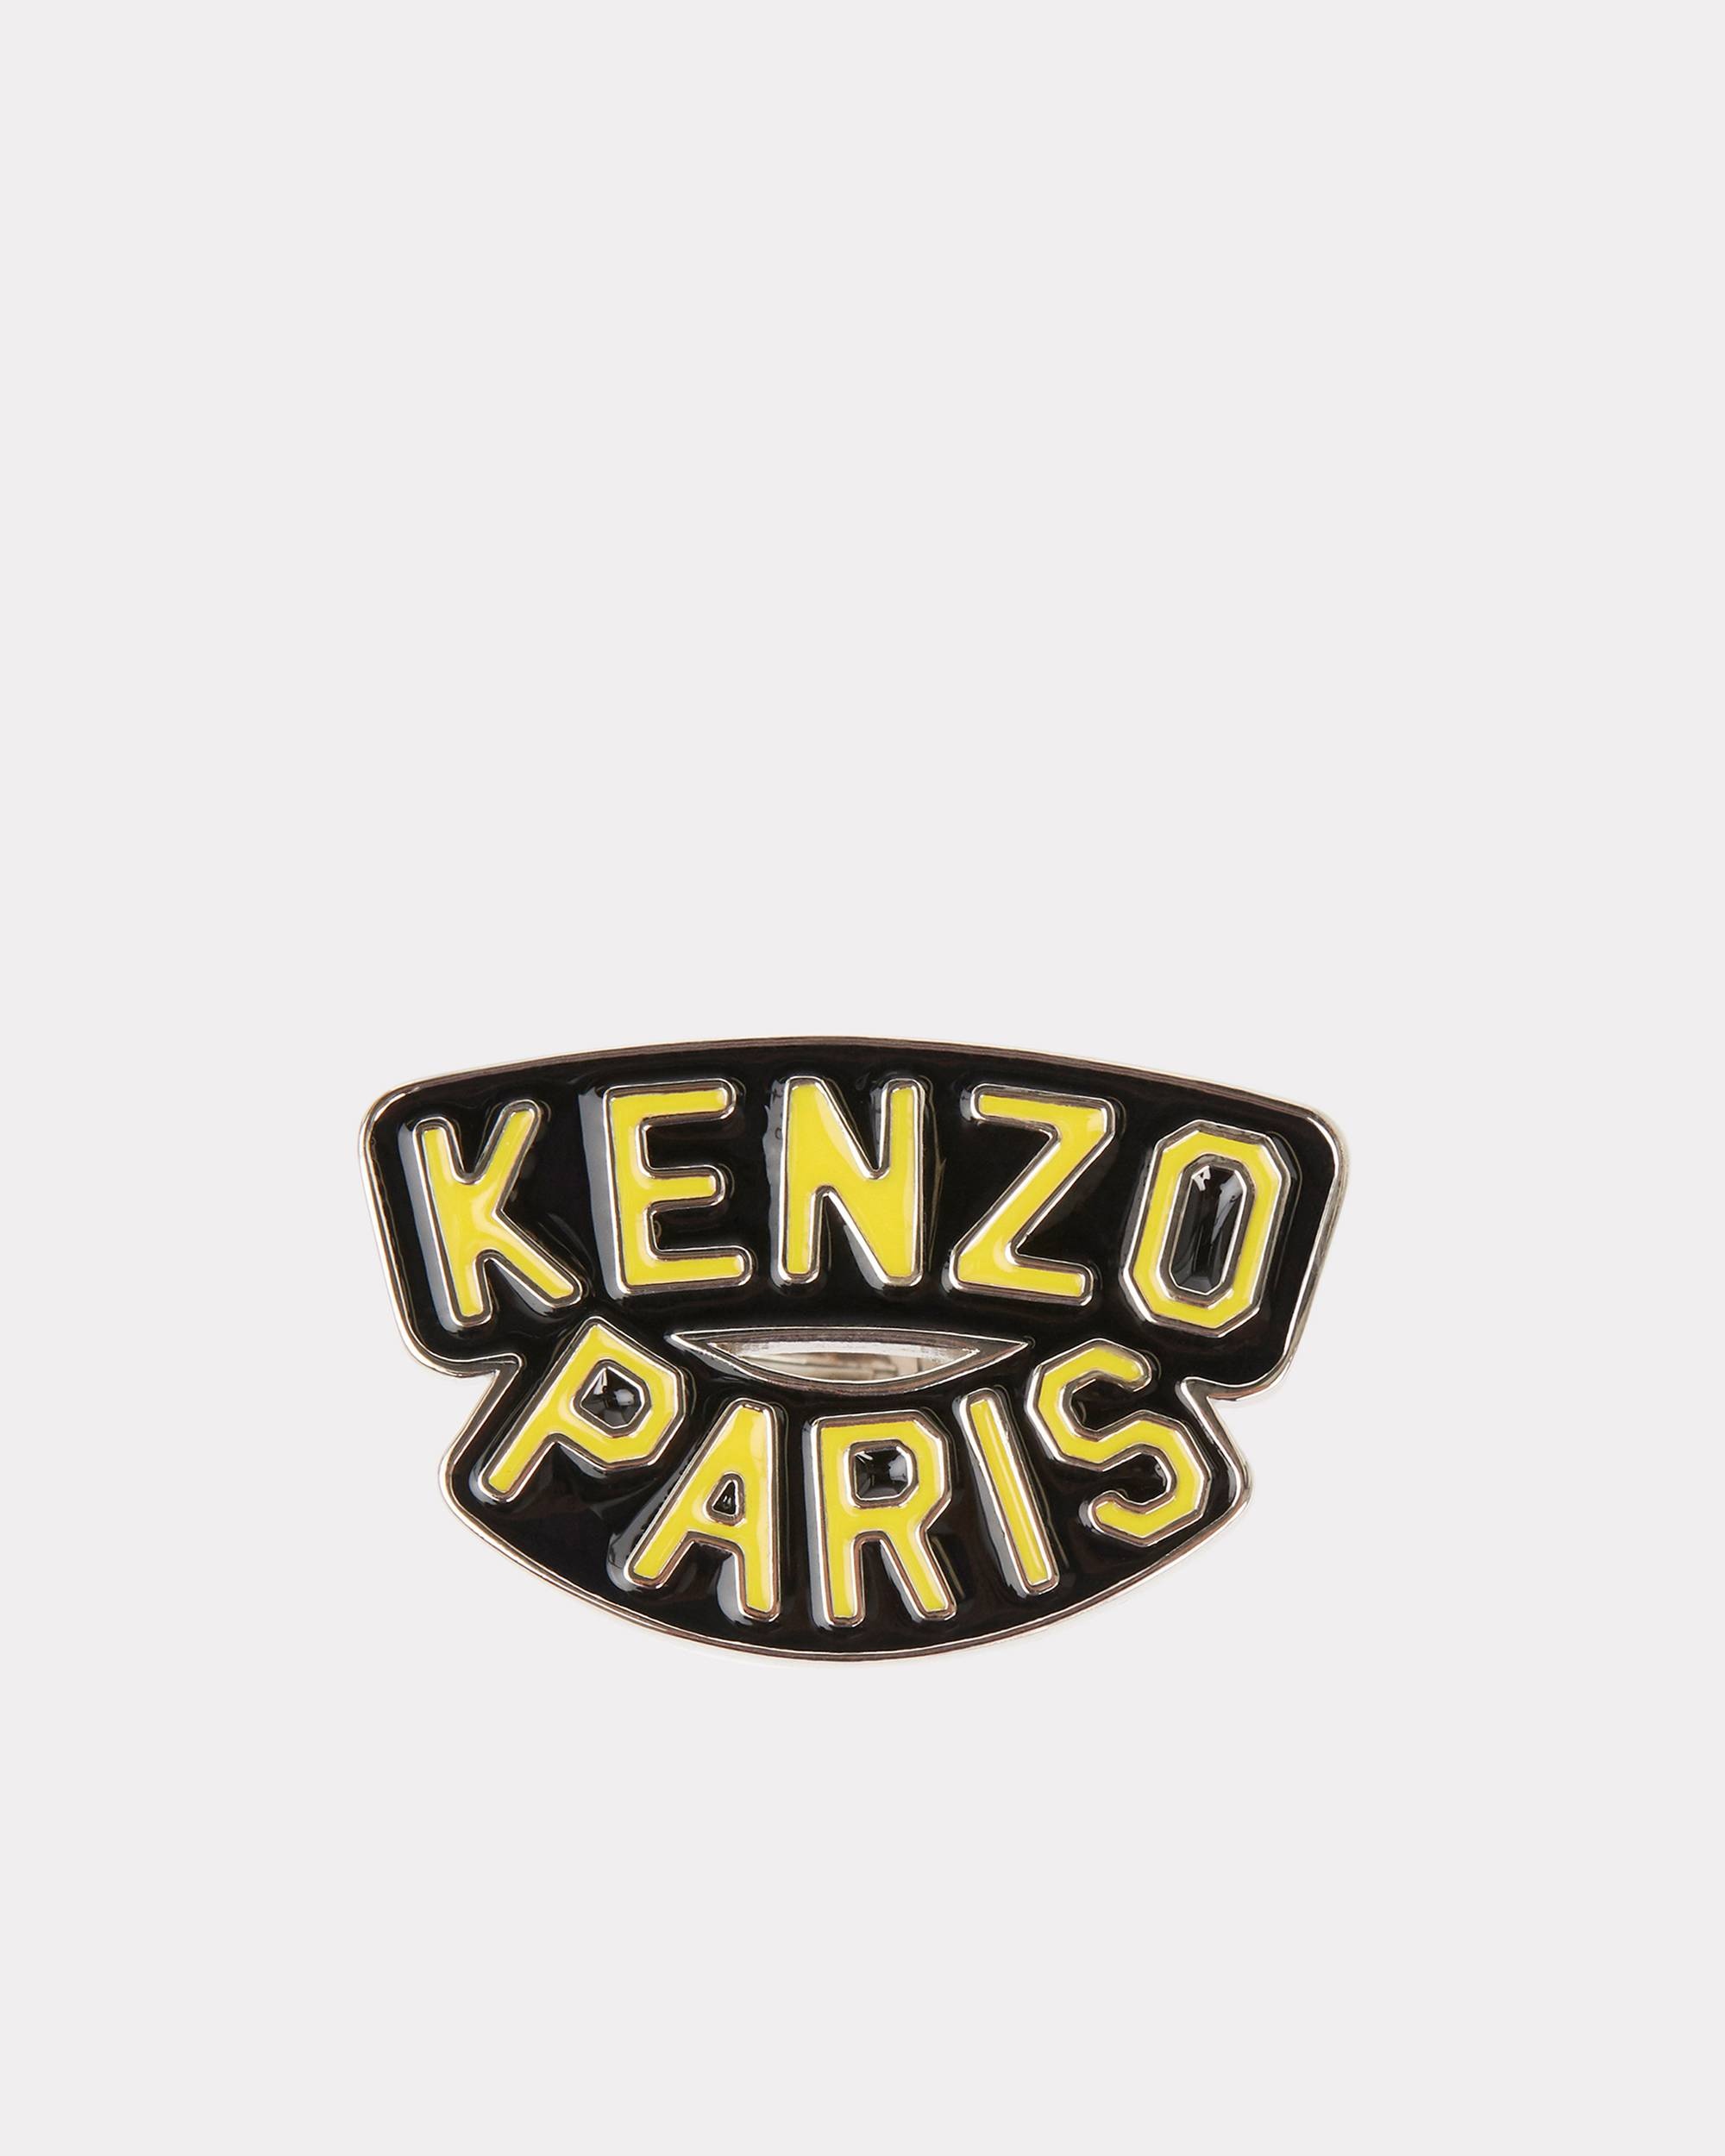 'KENZO Paris' ring - 1